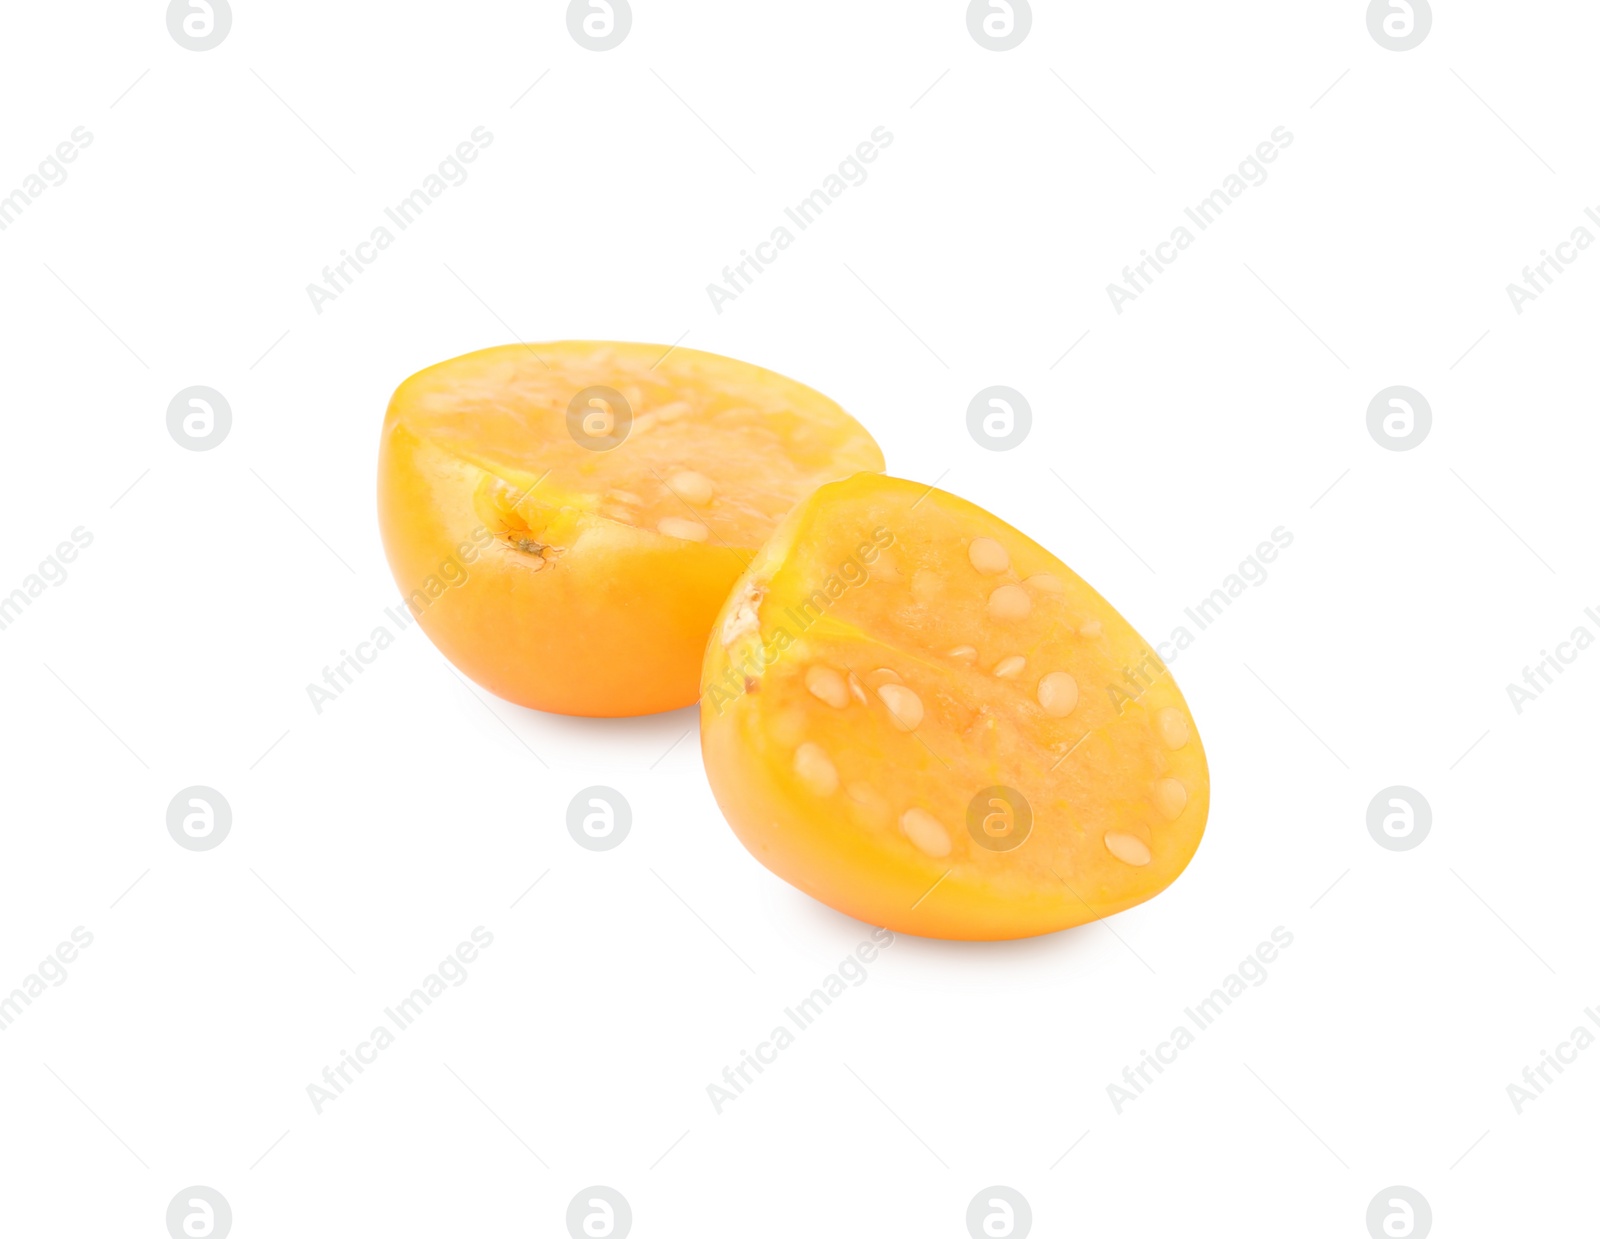 Photo of Cut ripe orange physalis fruit isolated on white